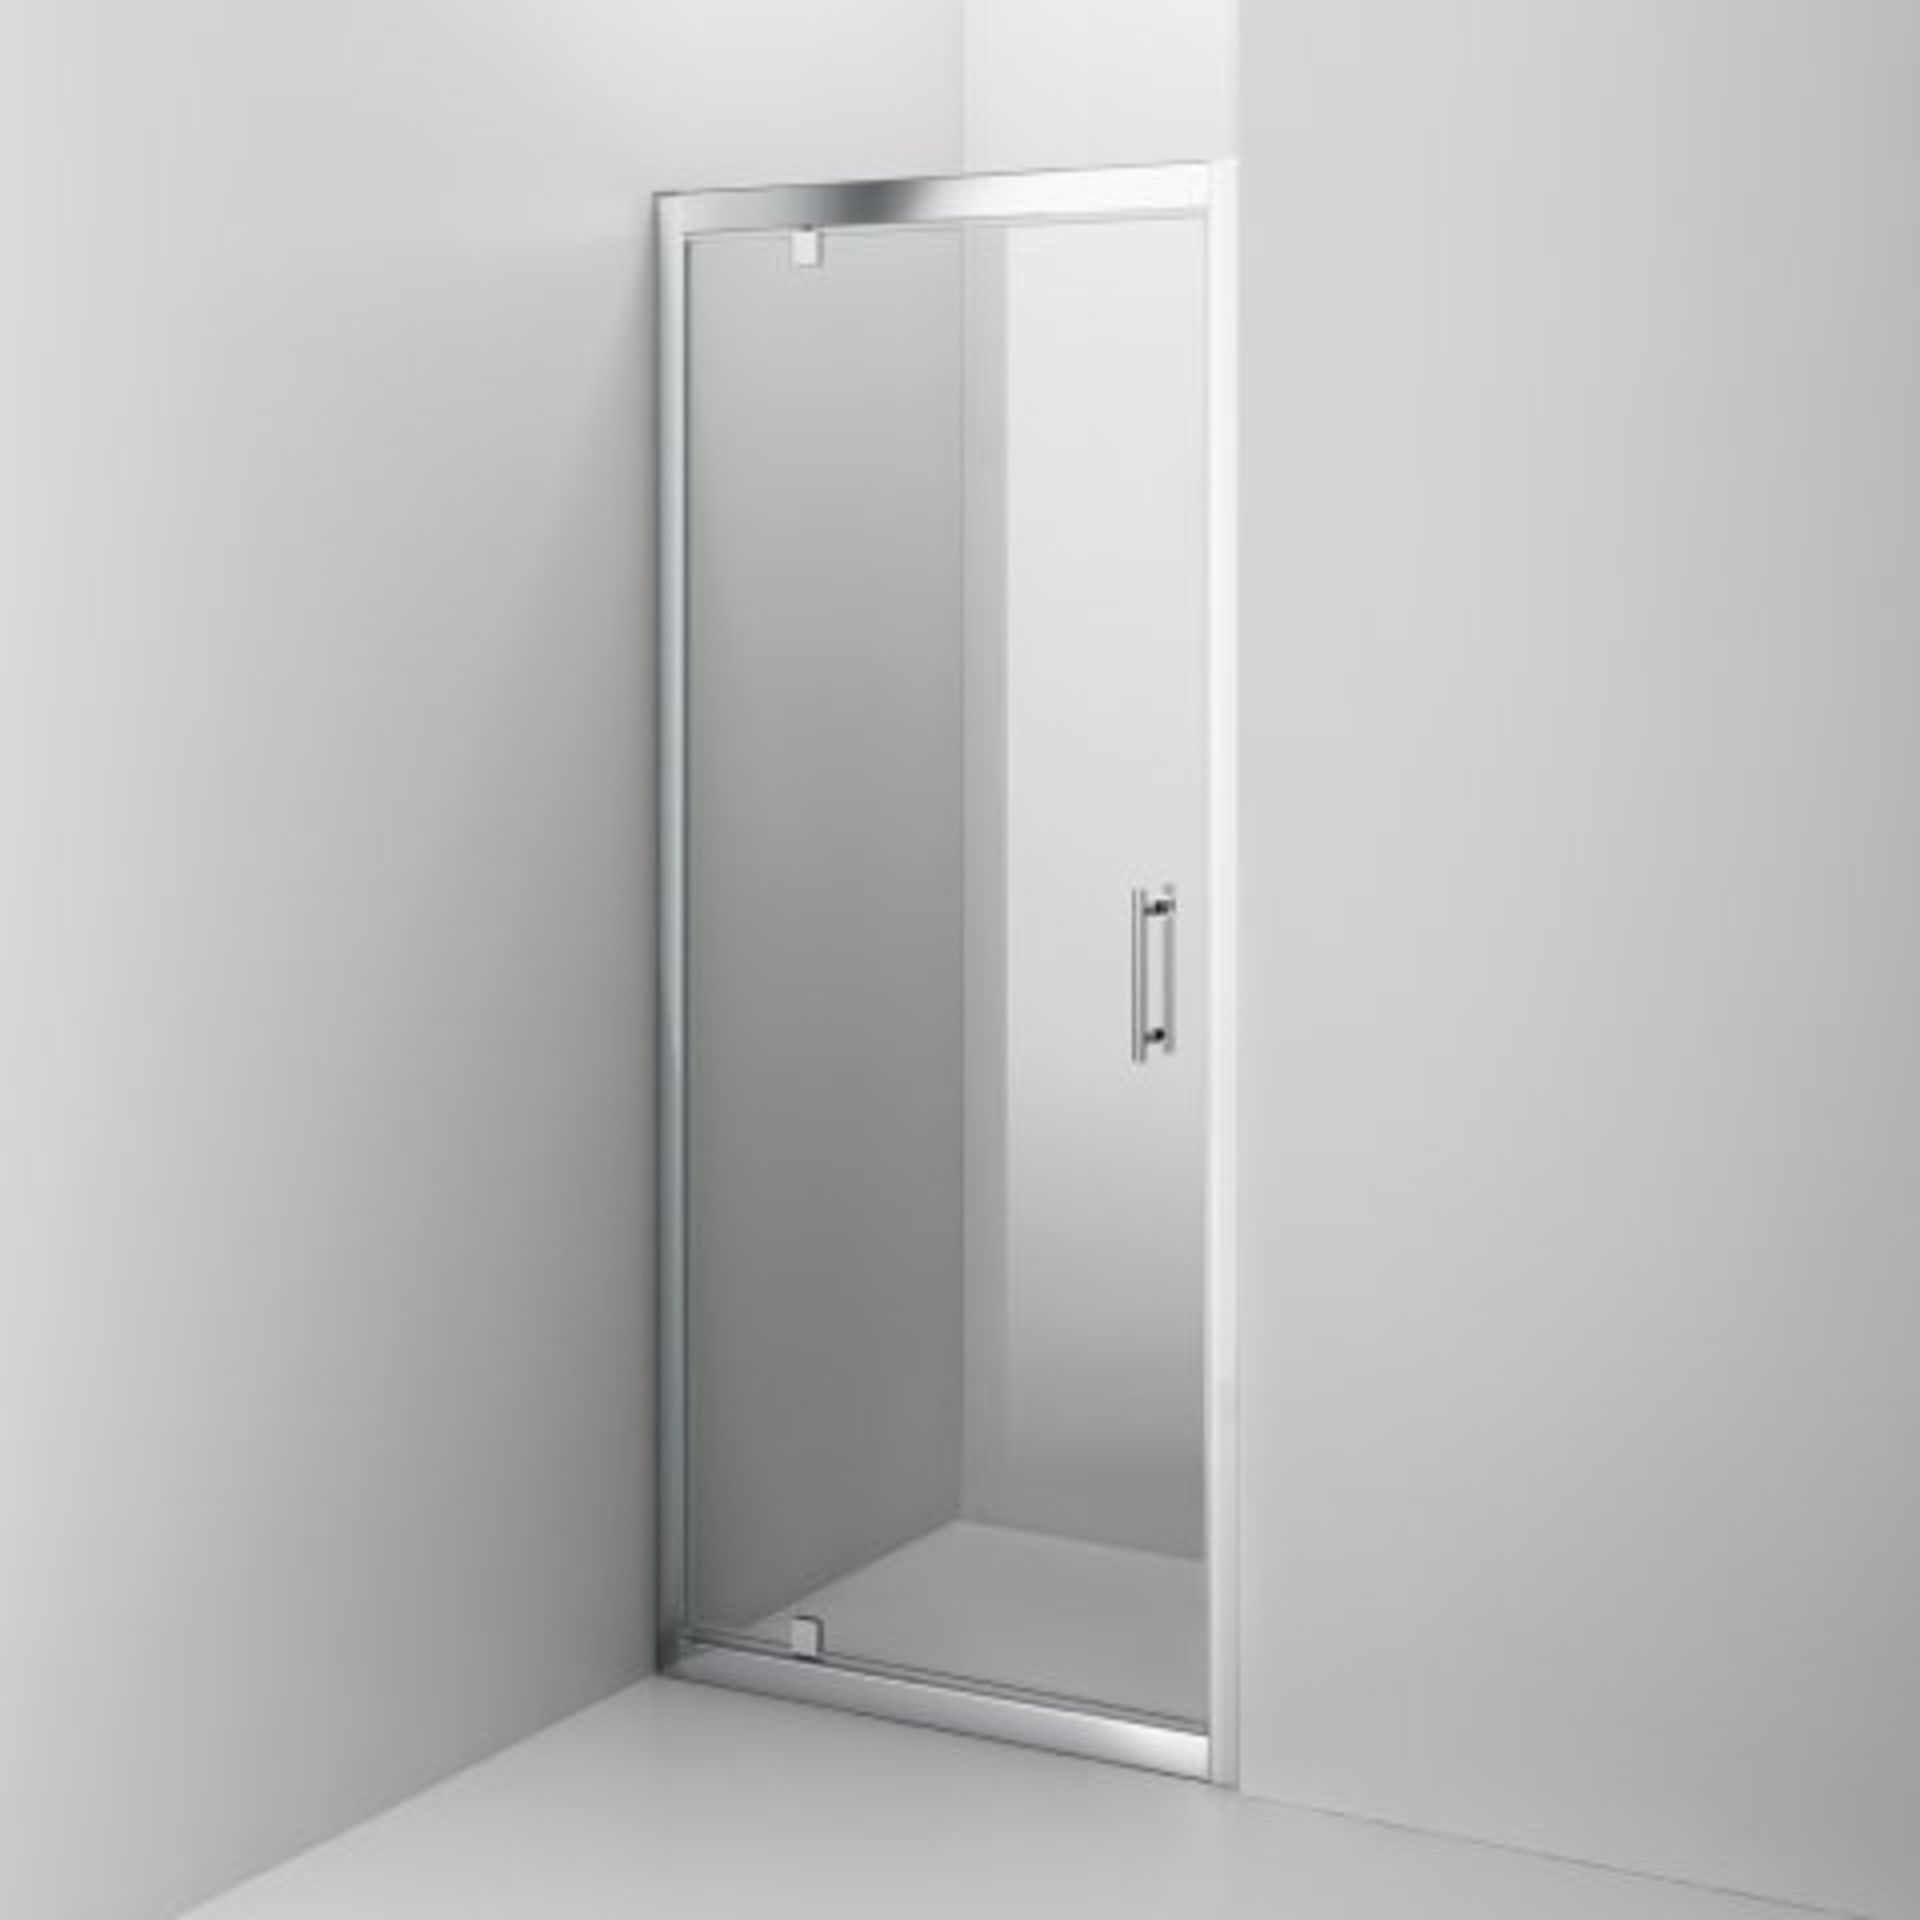 (I50) 760mm - 6mm - Elements Pivot Shower Door. RRP £299.99. Essential Design Our standard range - Image 5 of 5